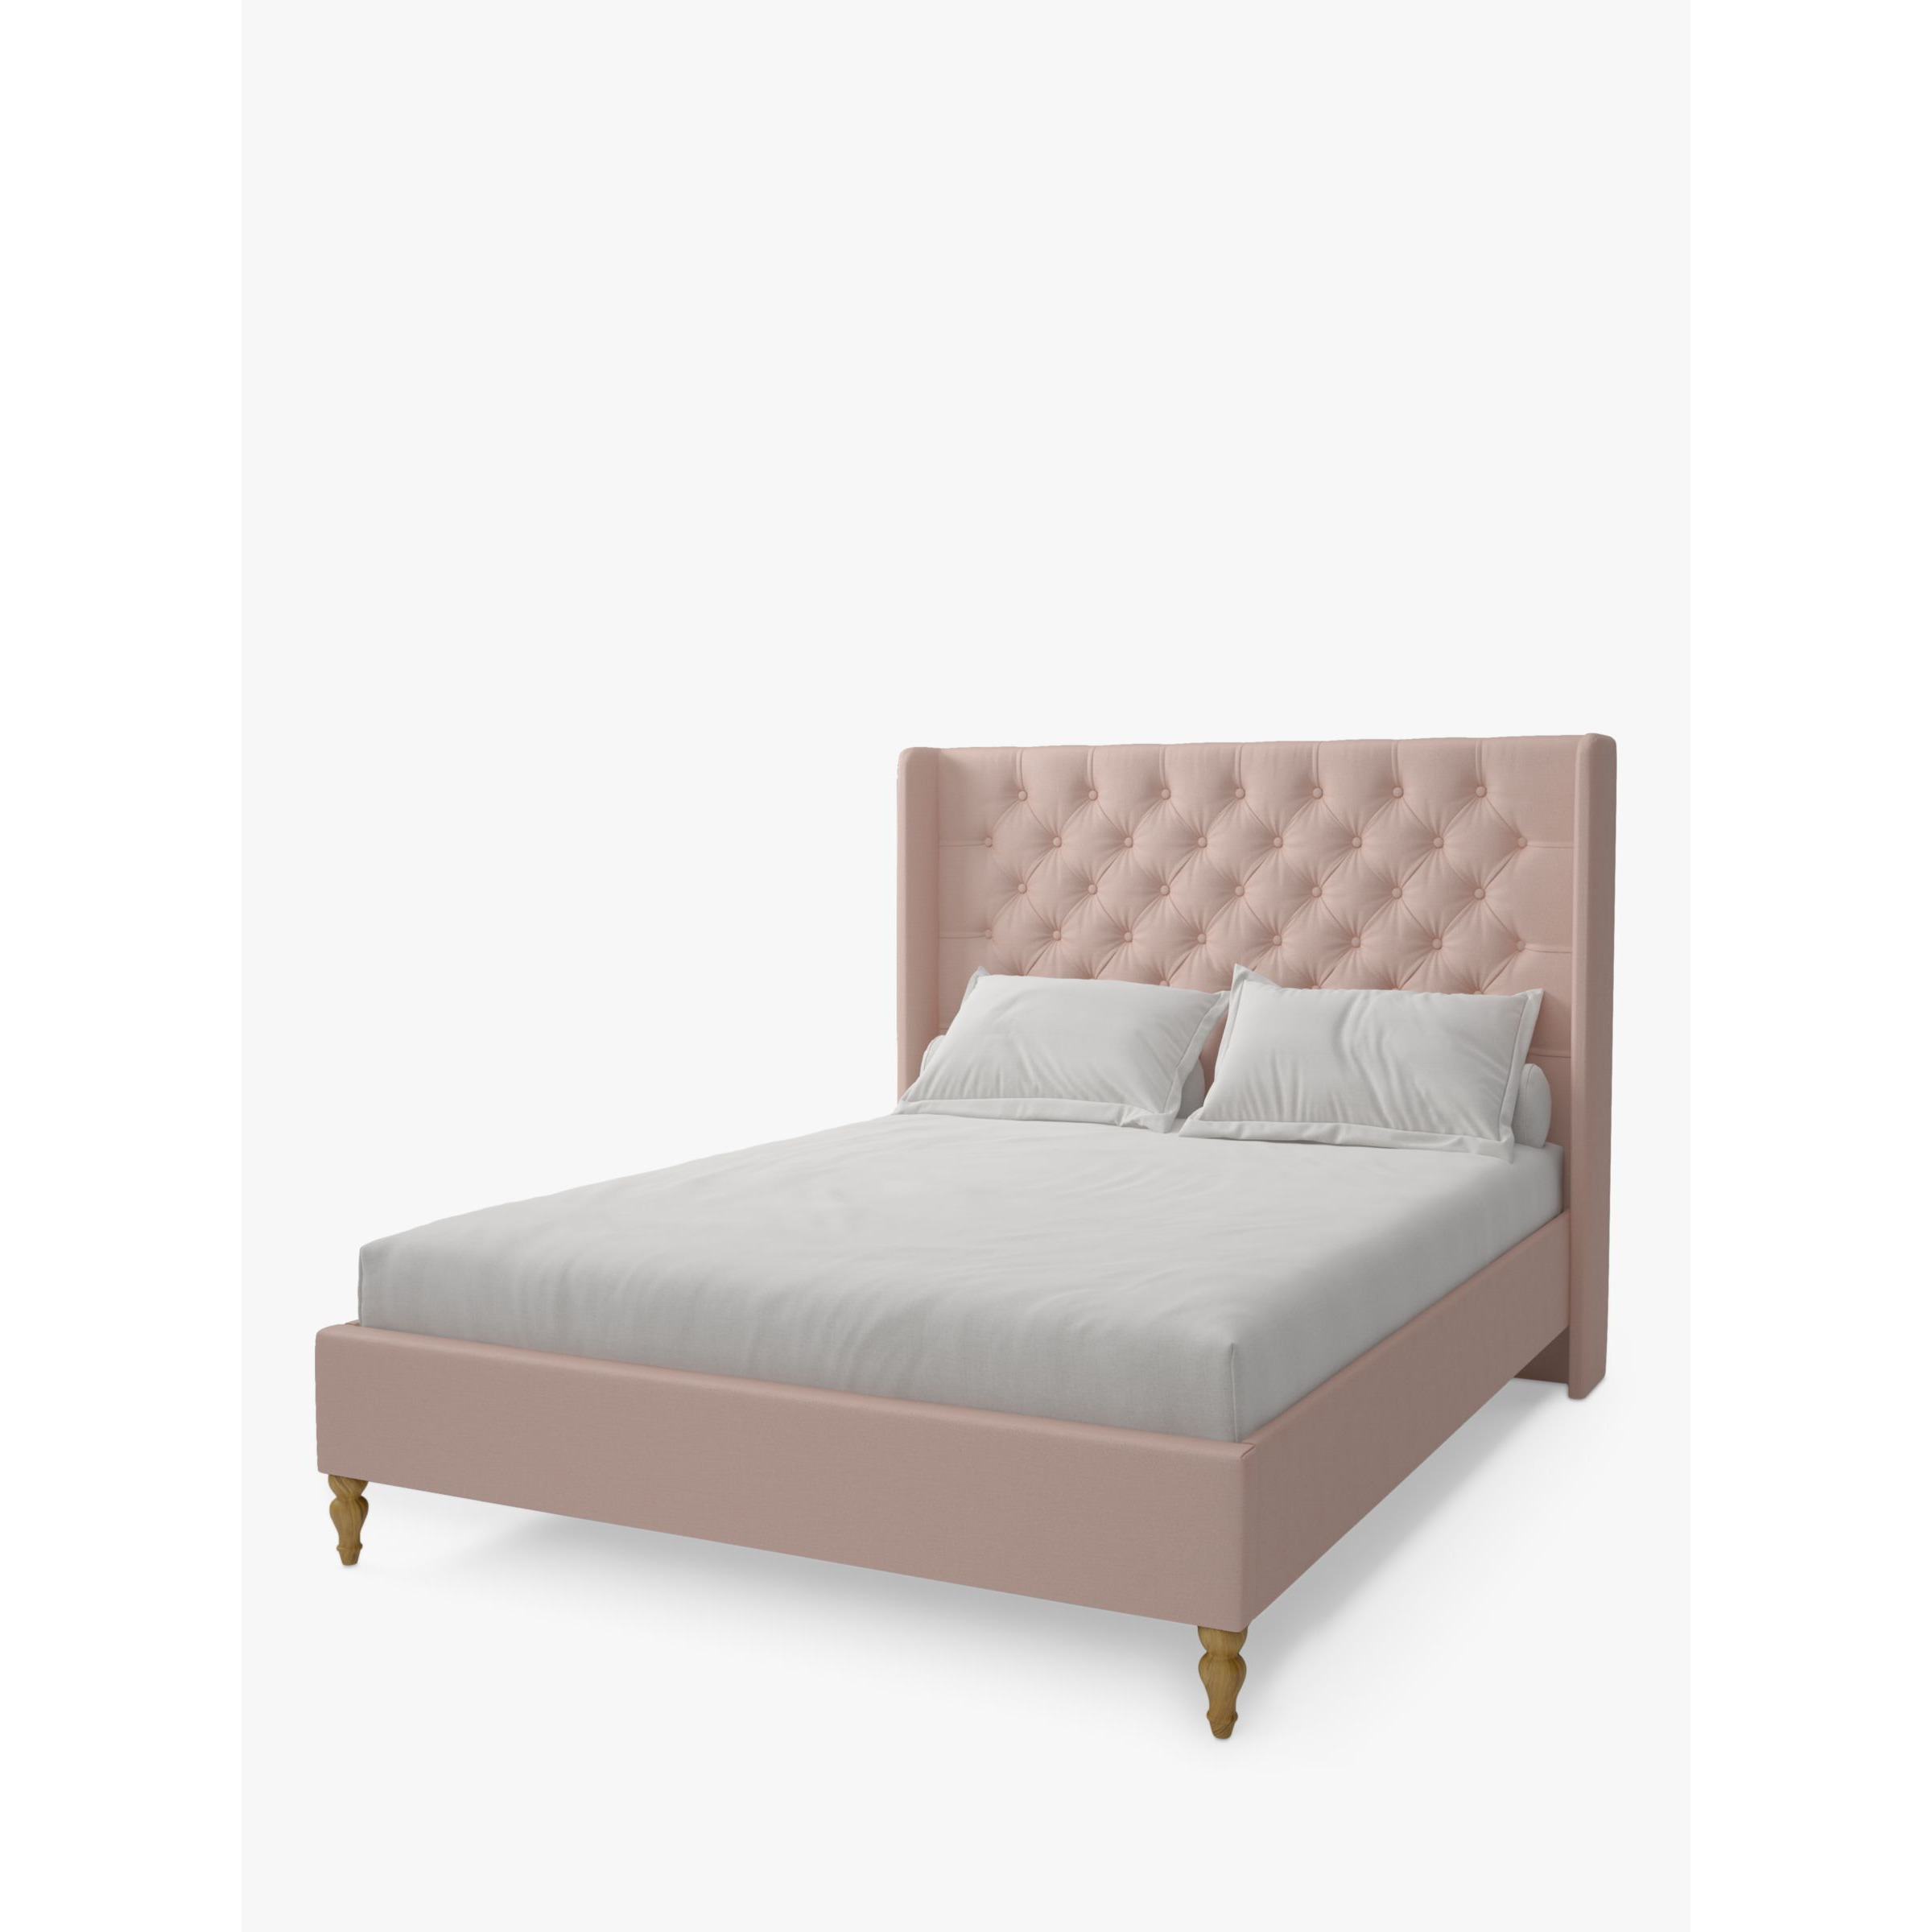 Koti Home Astley Upholstered Bed Frame, King Size - image 1